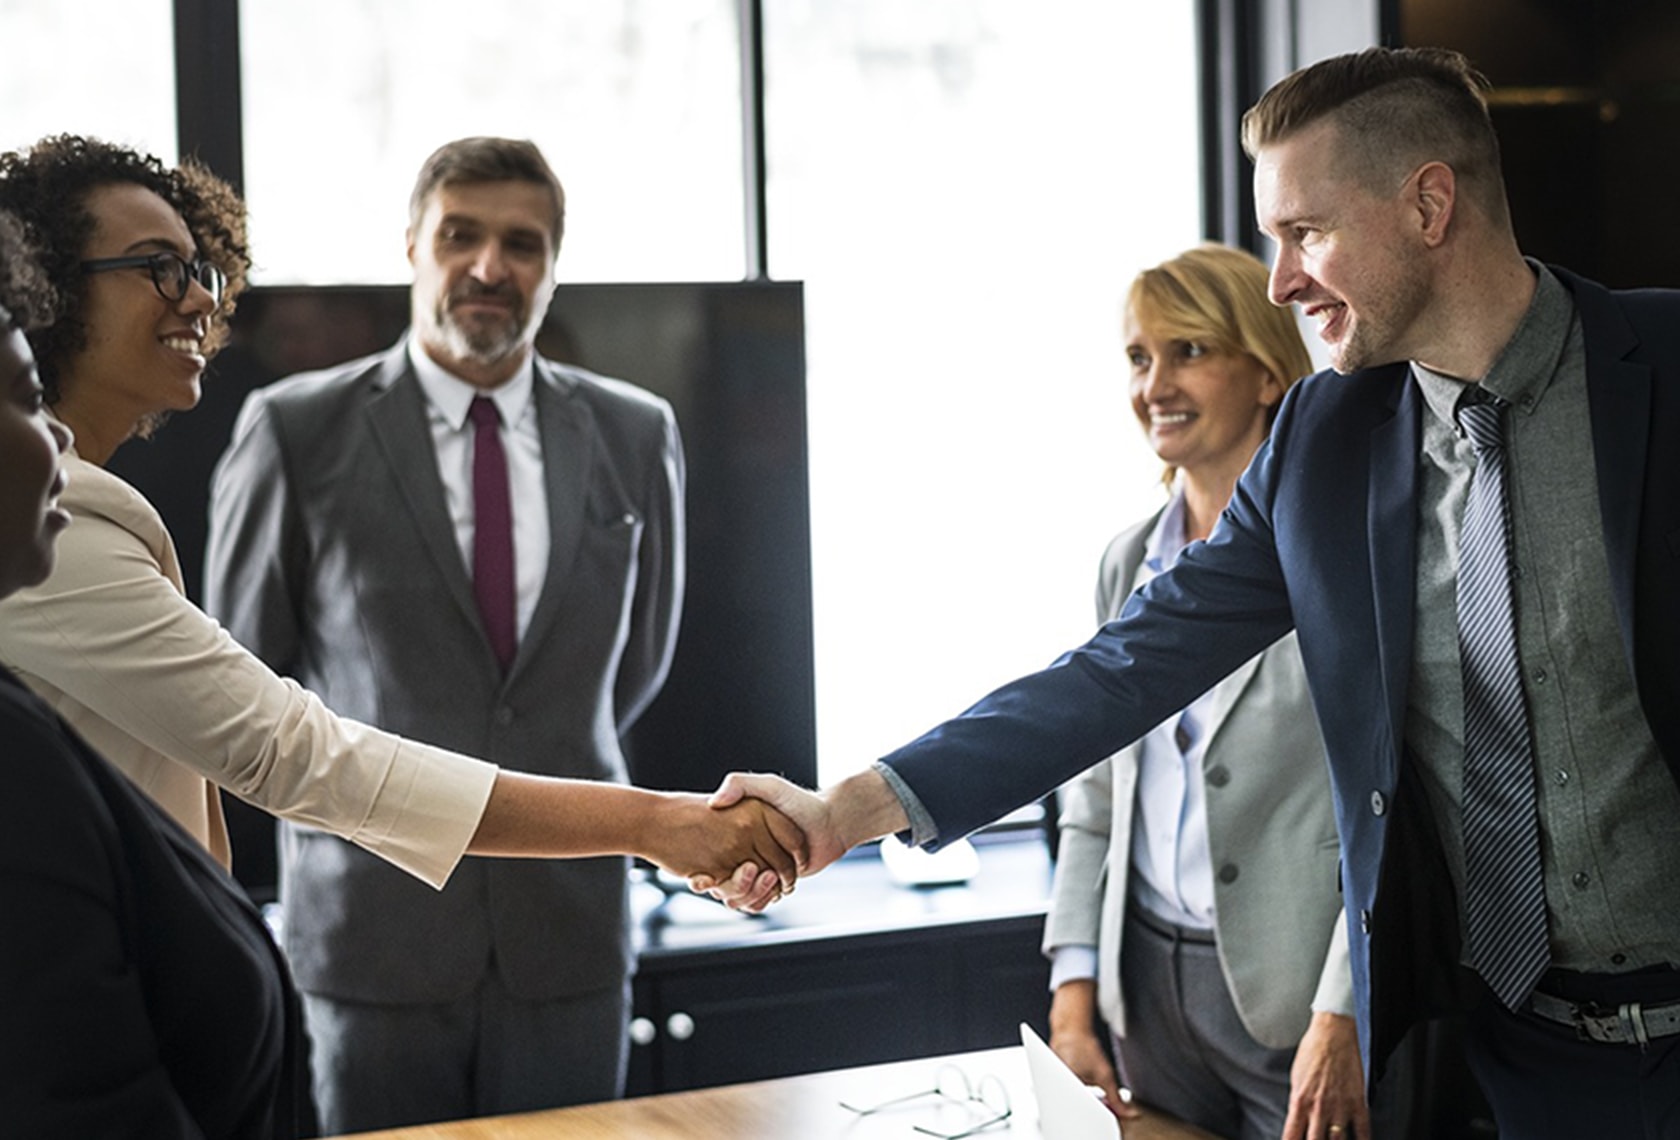 基本のビジネス英語「挨拶」について解説する記事中のイメージ画像です。数人のビジネスパーソンが輪になって立っており、手前の2人が笑顔で握手しています。